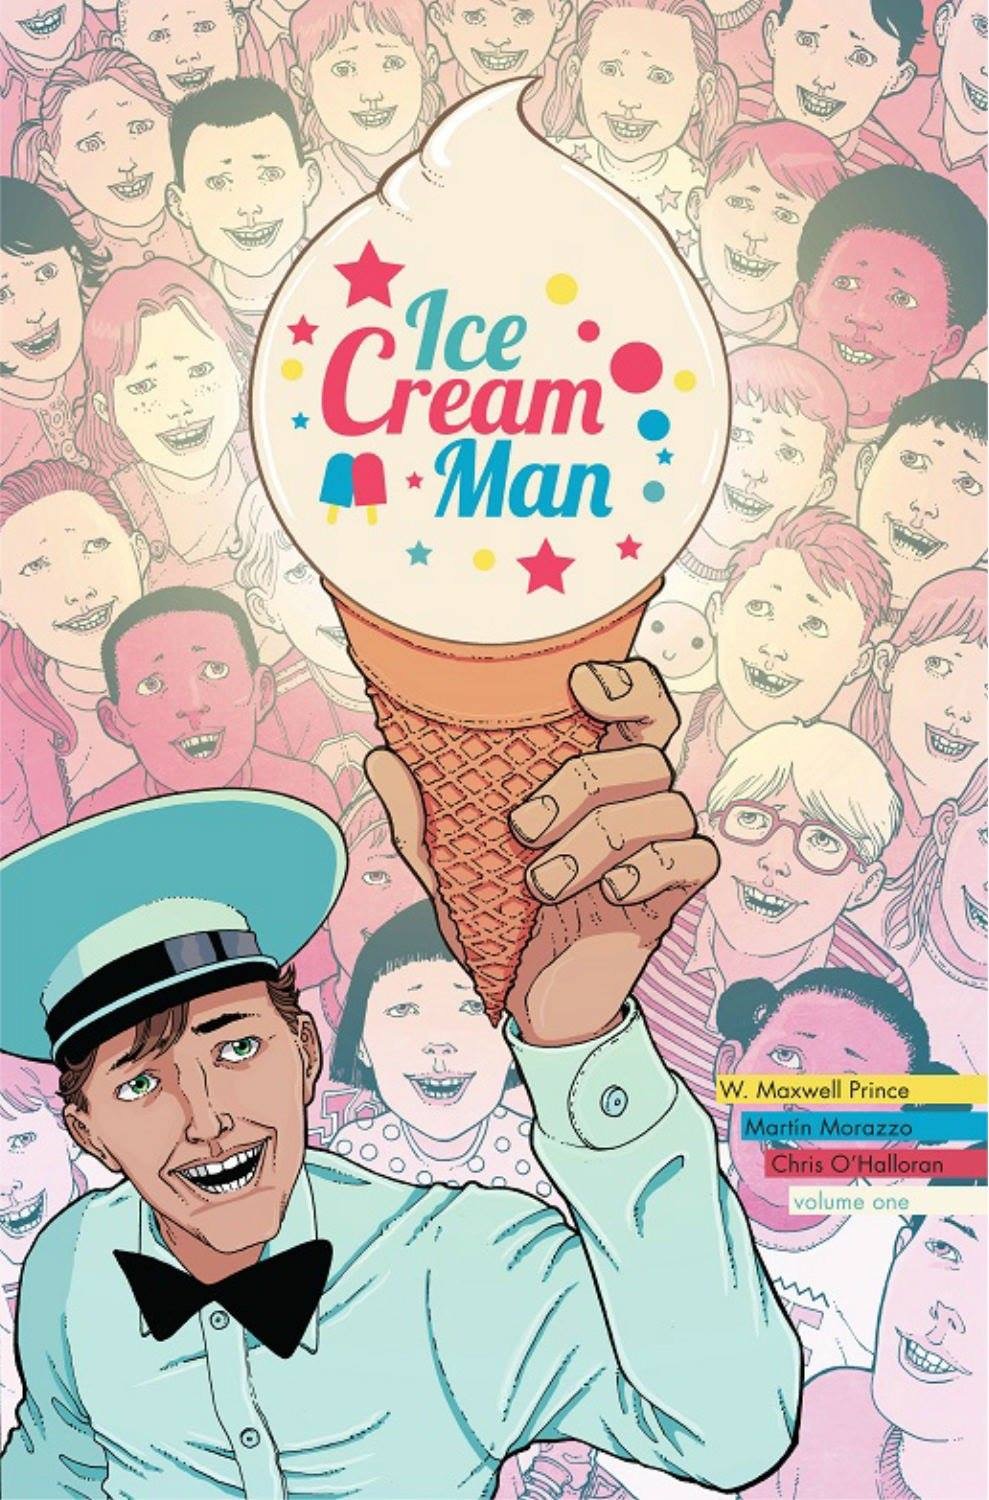 ice cream man comic - Ice Cream Man Es 29 W. Maxwell Prince Martin Morazzo Chris O'Halloran volume one